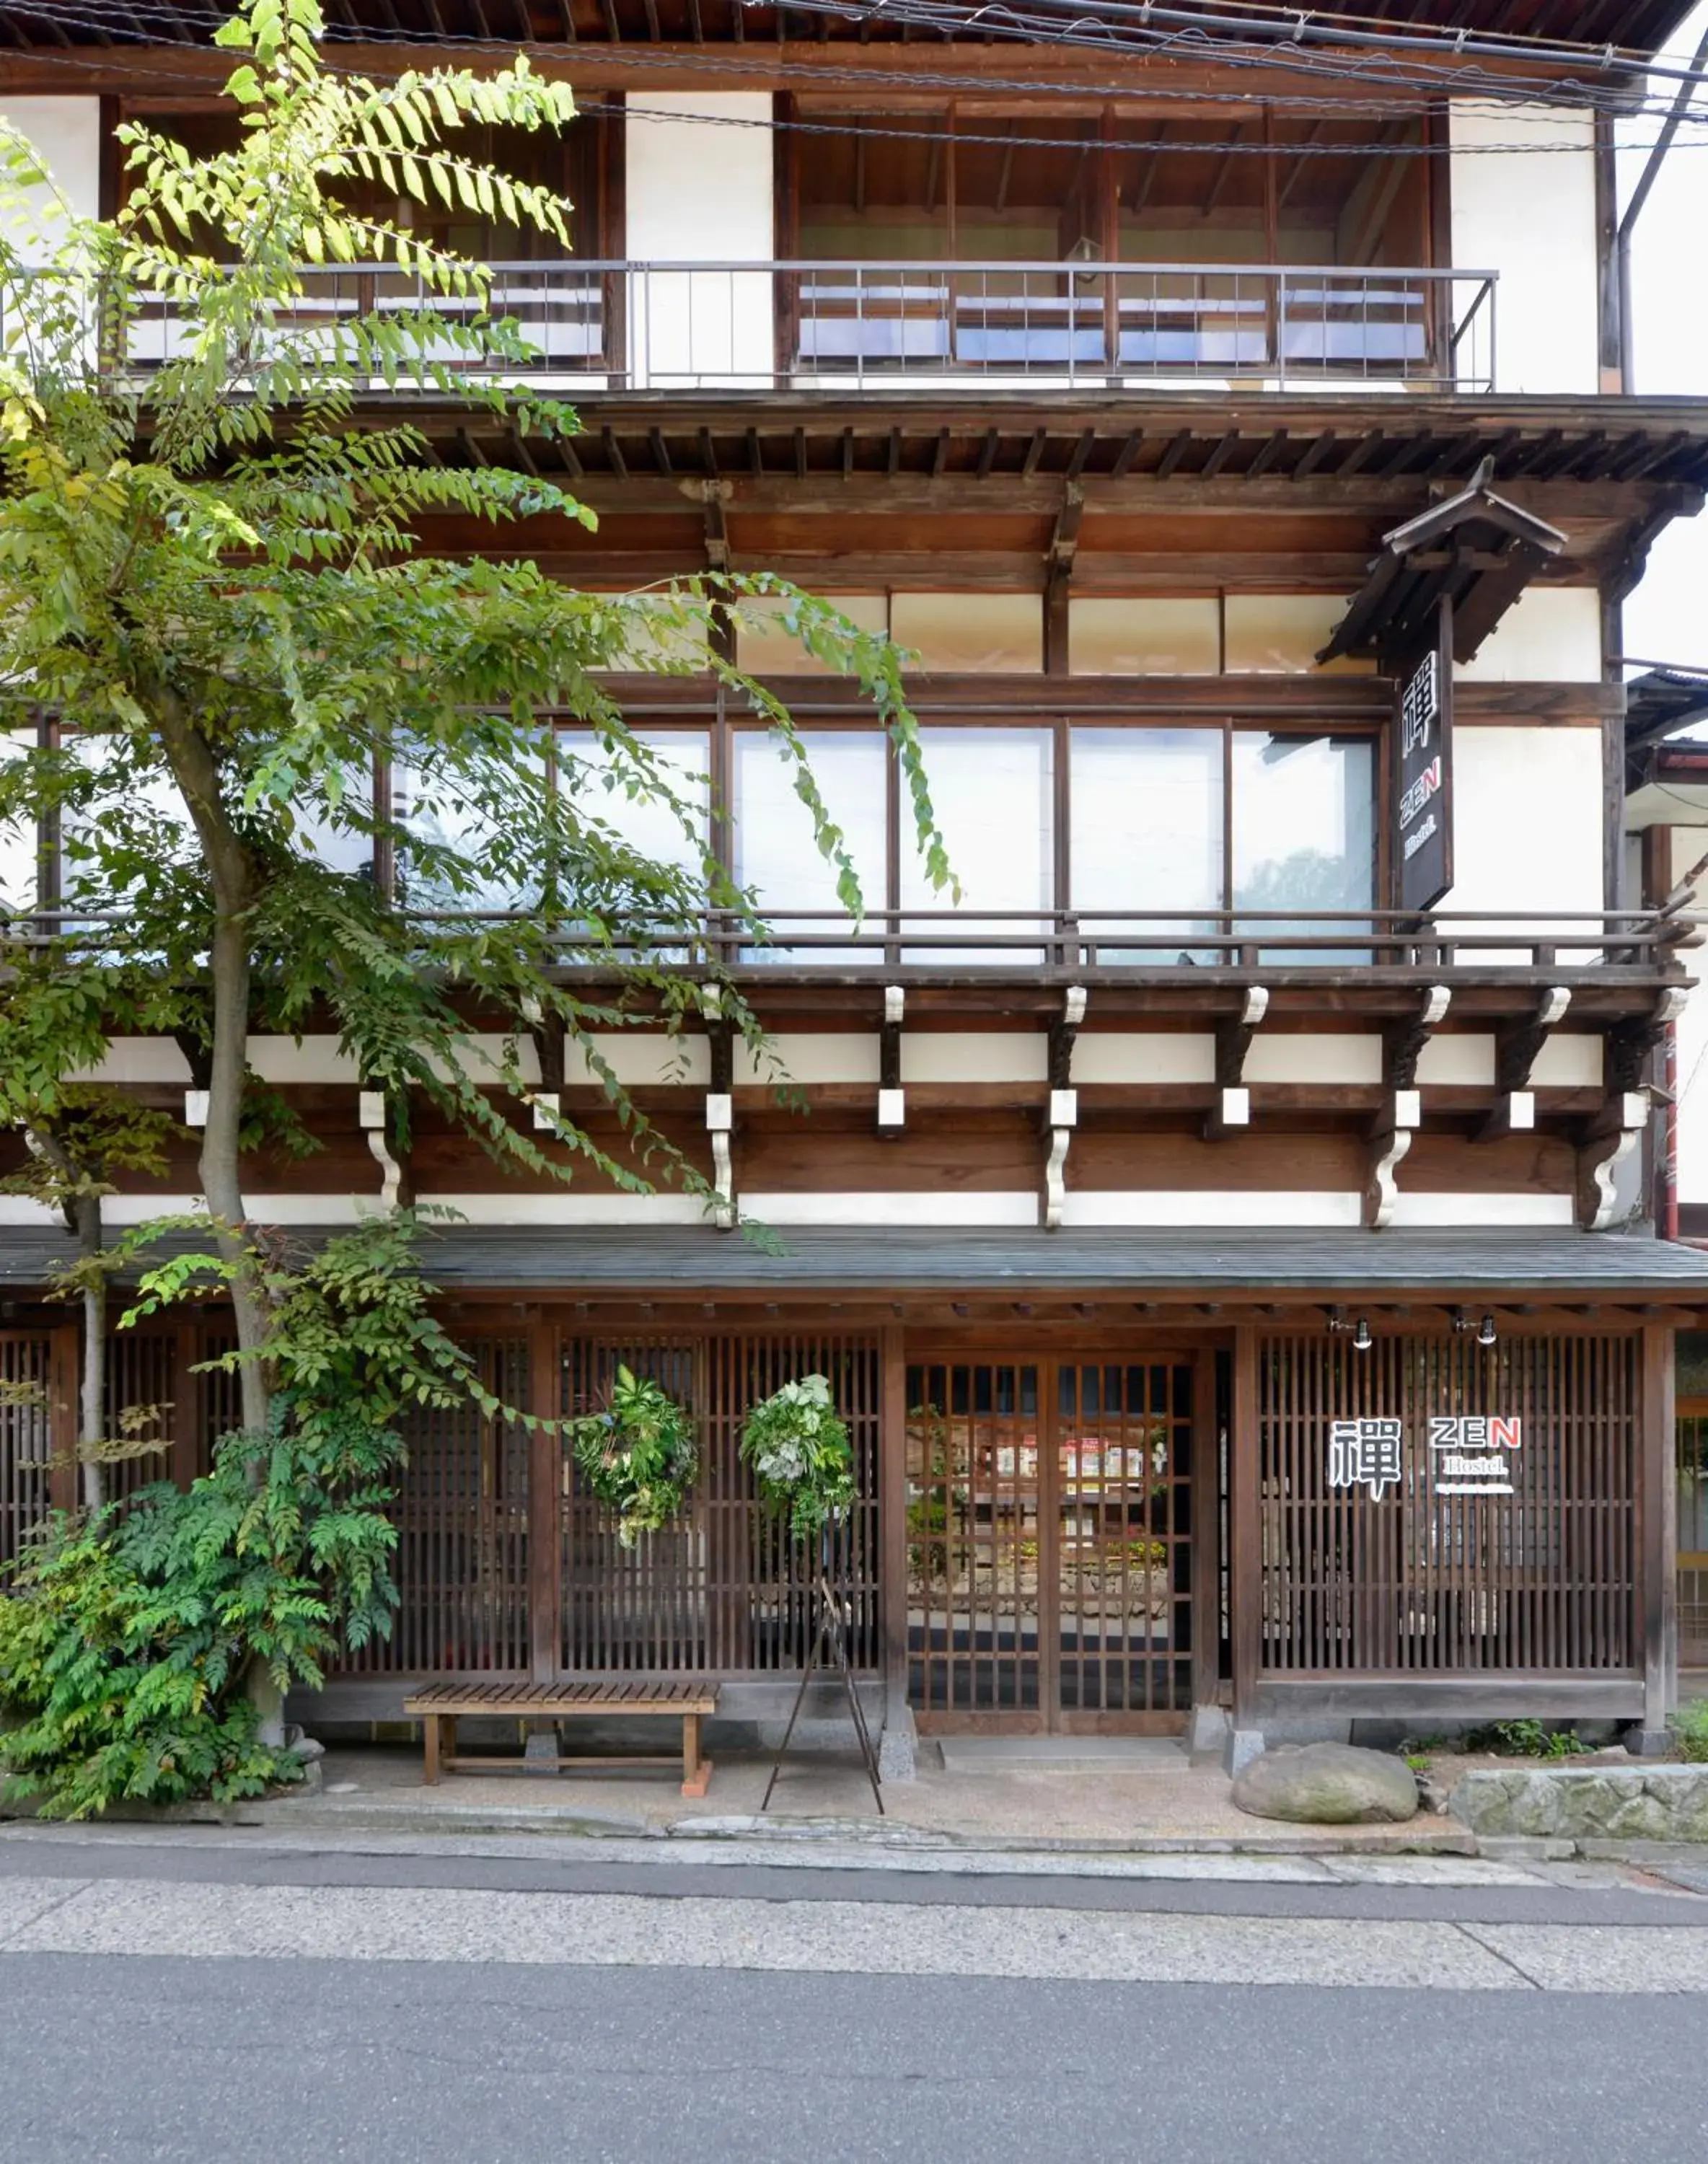 Property building, Patio/Outdoor Area in Zen Hostel